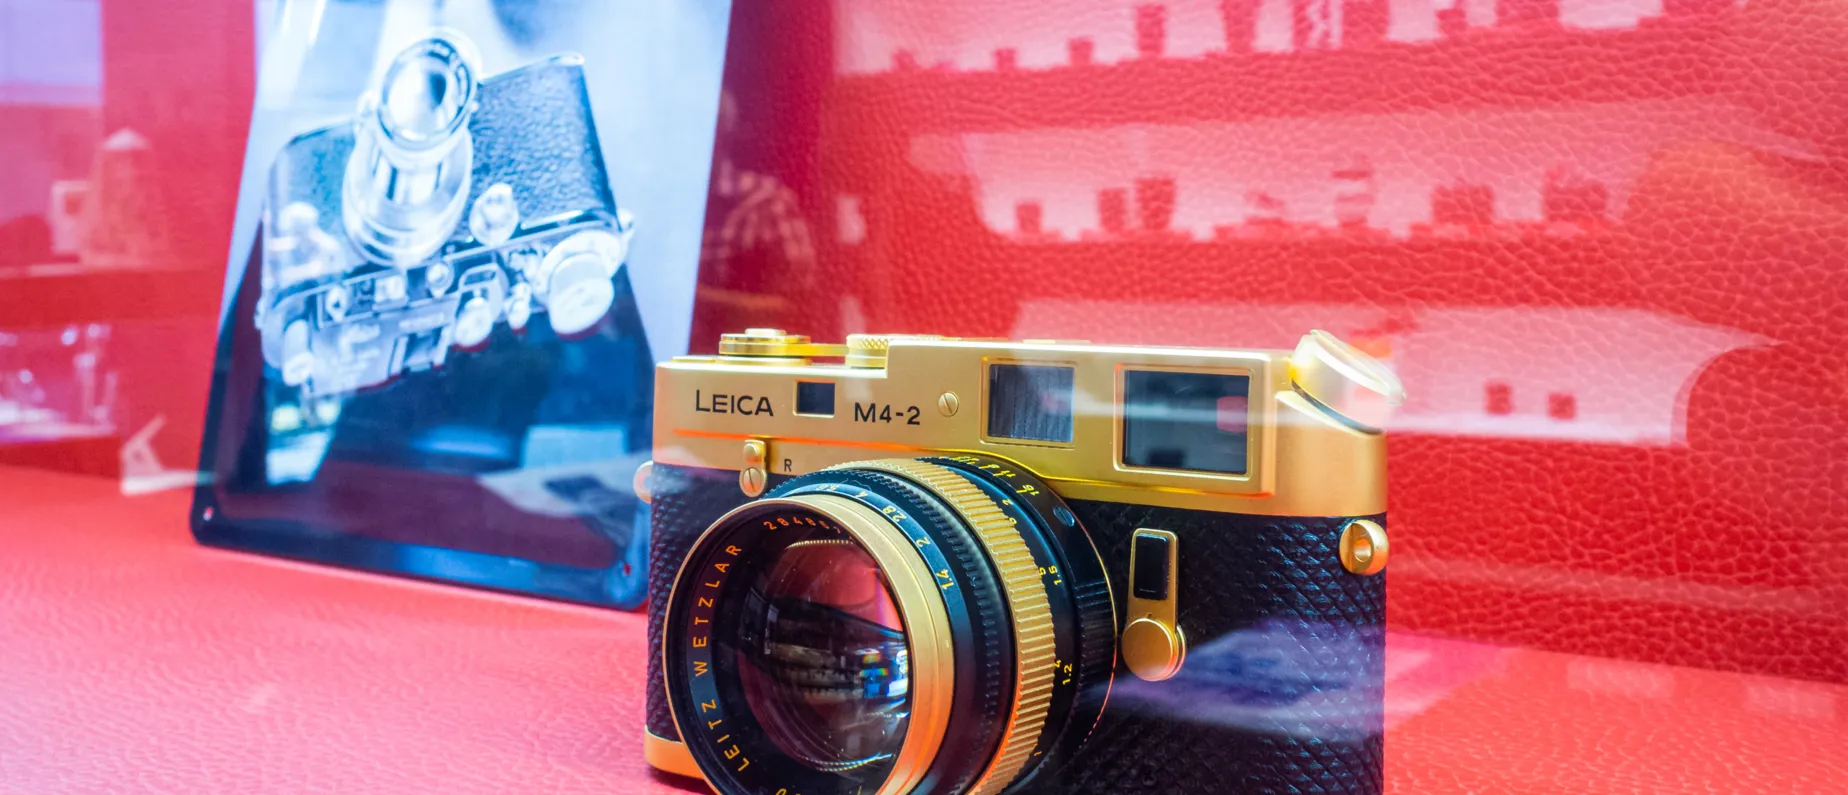 Auch Sammlerstücke gibt's bei Foto Marlin zu bestaunen: Eine goldene Leica in Erinnerung an Oskar Barnack – er gilt als Erfinder der 35-mm-Kleinbildkamera.